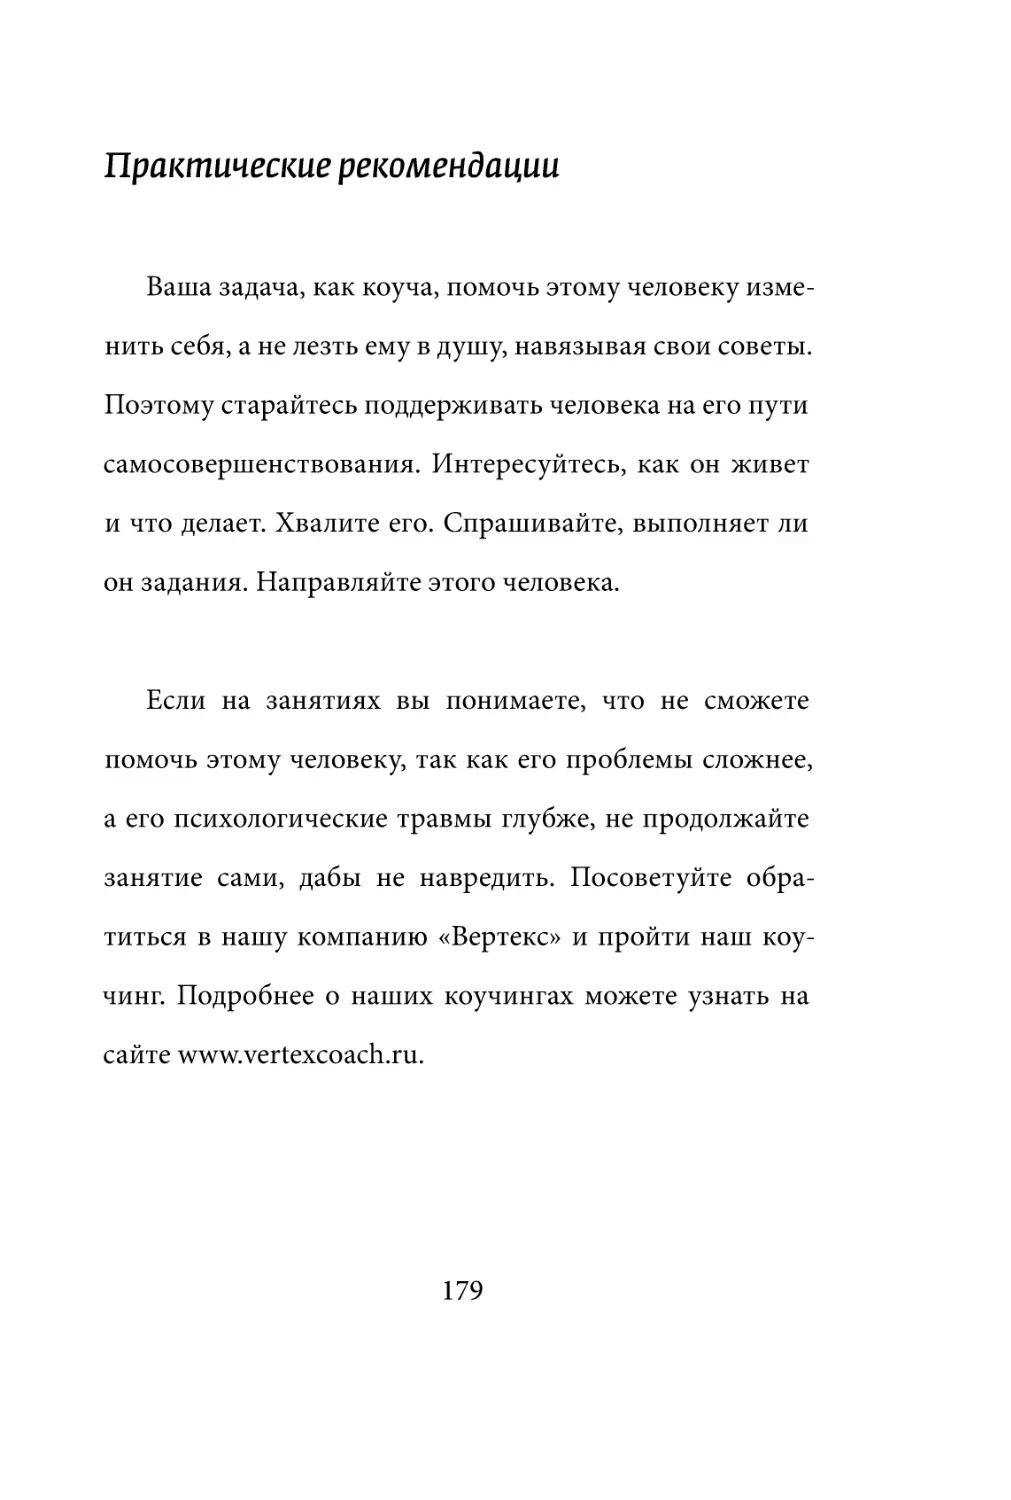 Sergey_Filippov_Dnevnik_samorazvitia_Evolyutsia_Vnutrennego_Sostoyania_179.pdf (p.179)